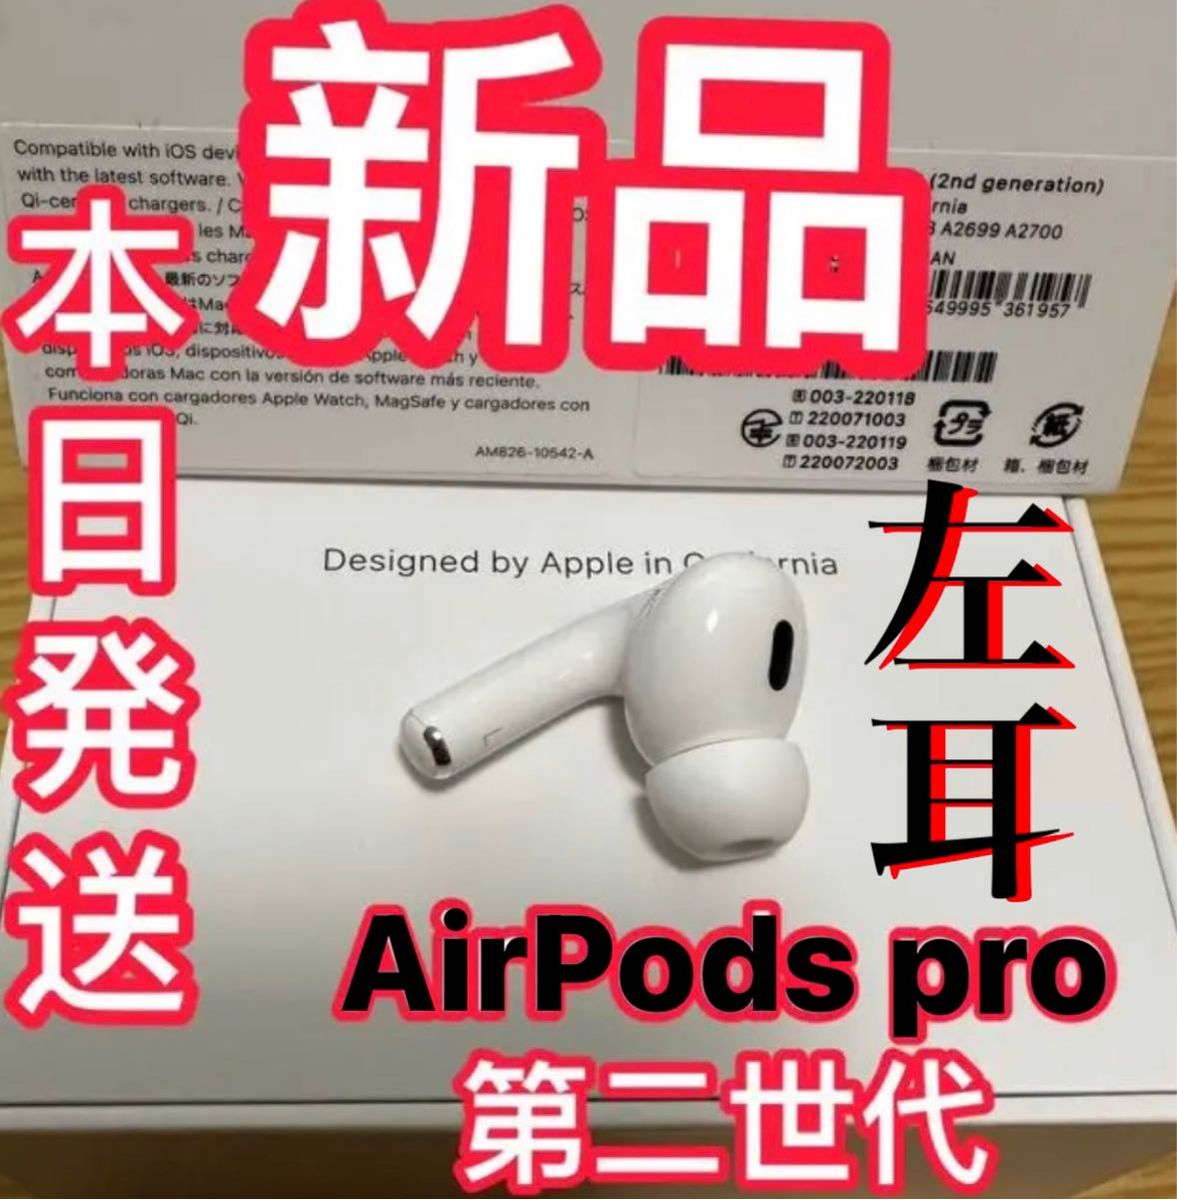 卸直営卸直営AirPods Pro 左耳のみ Apple純正品 エアーポッズプロ L片耳 イヤフォン